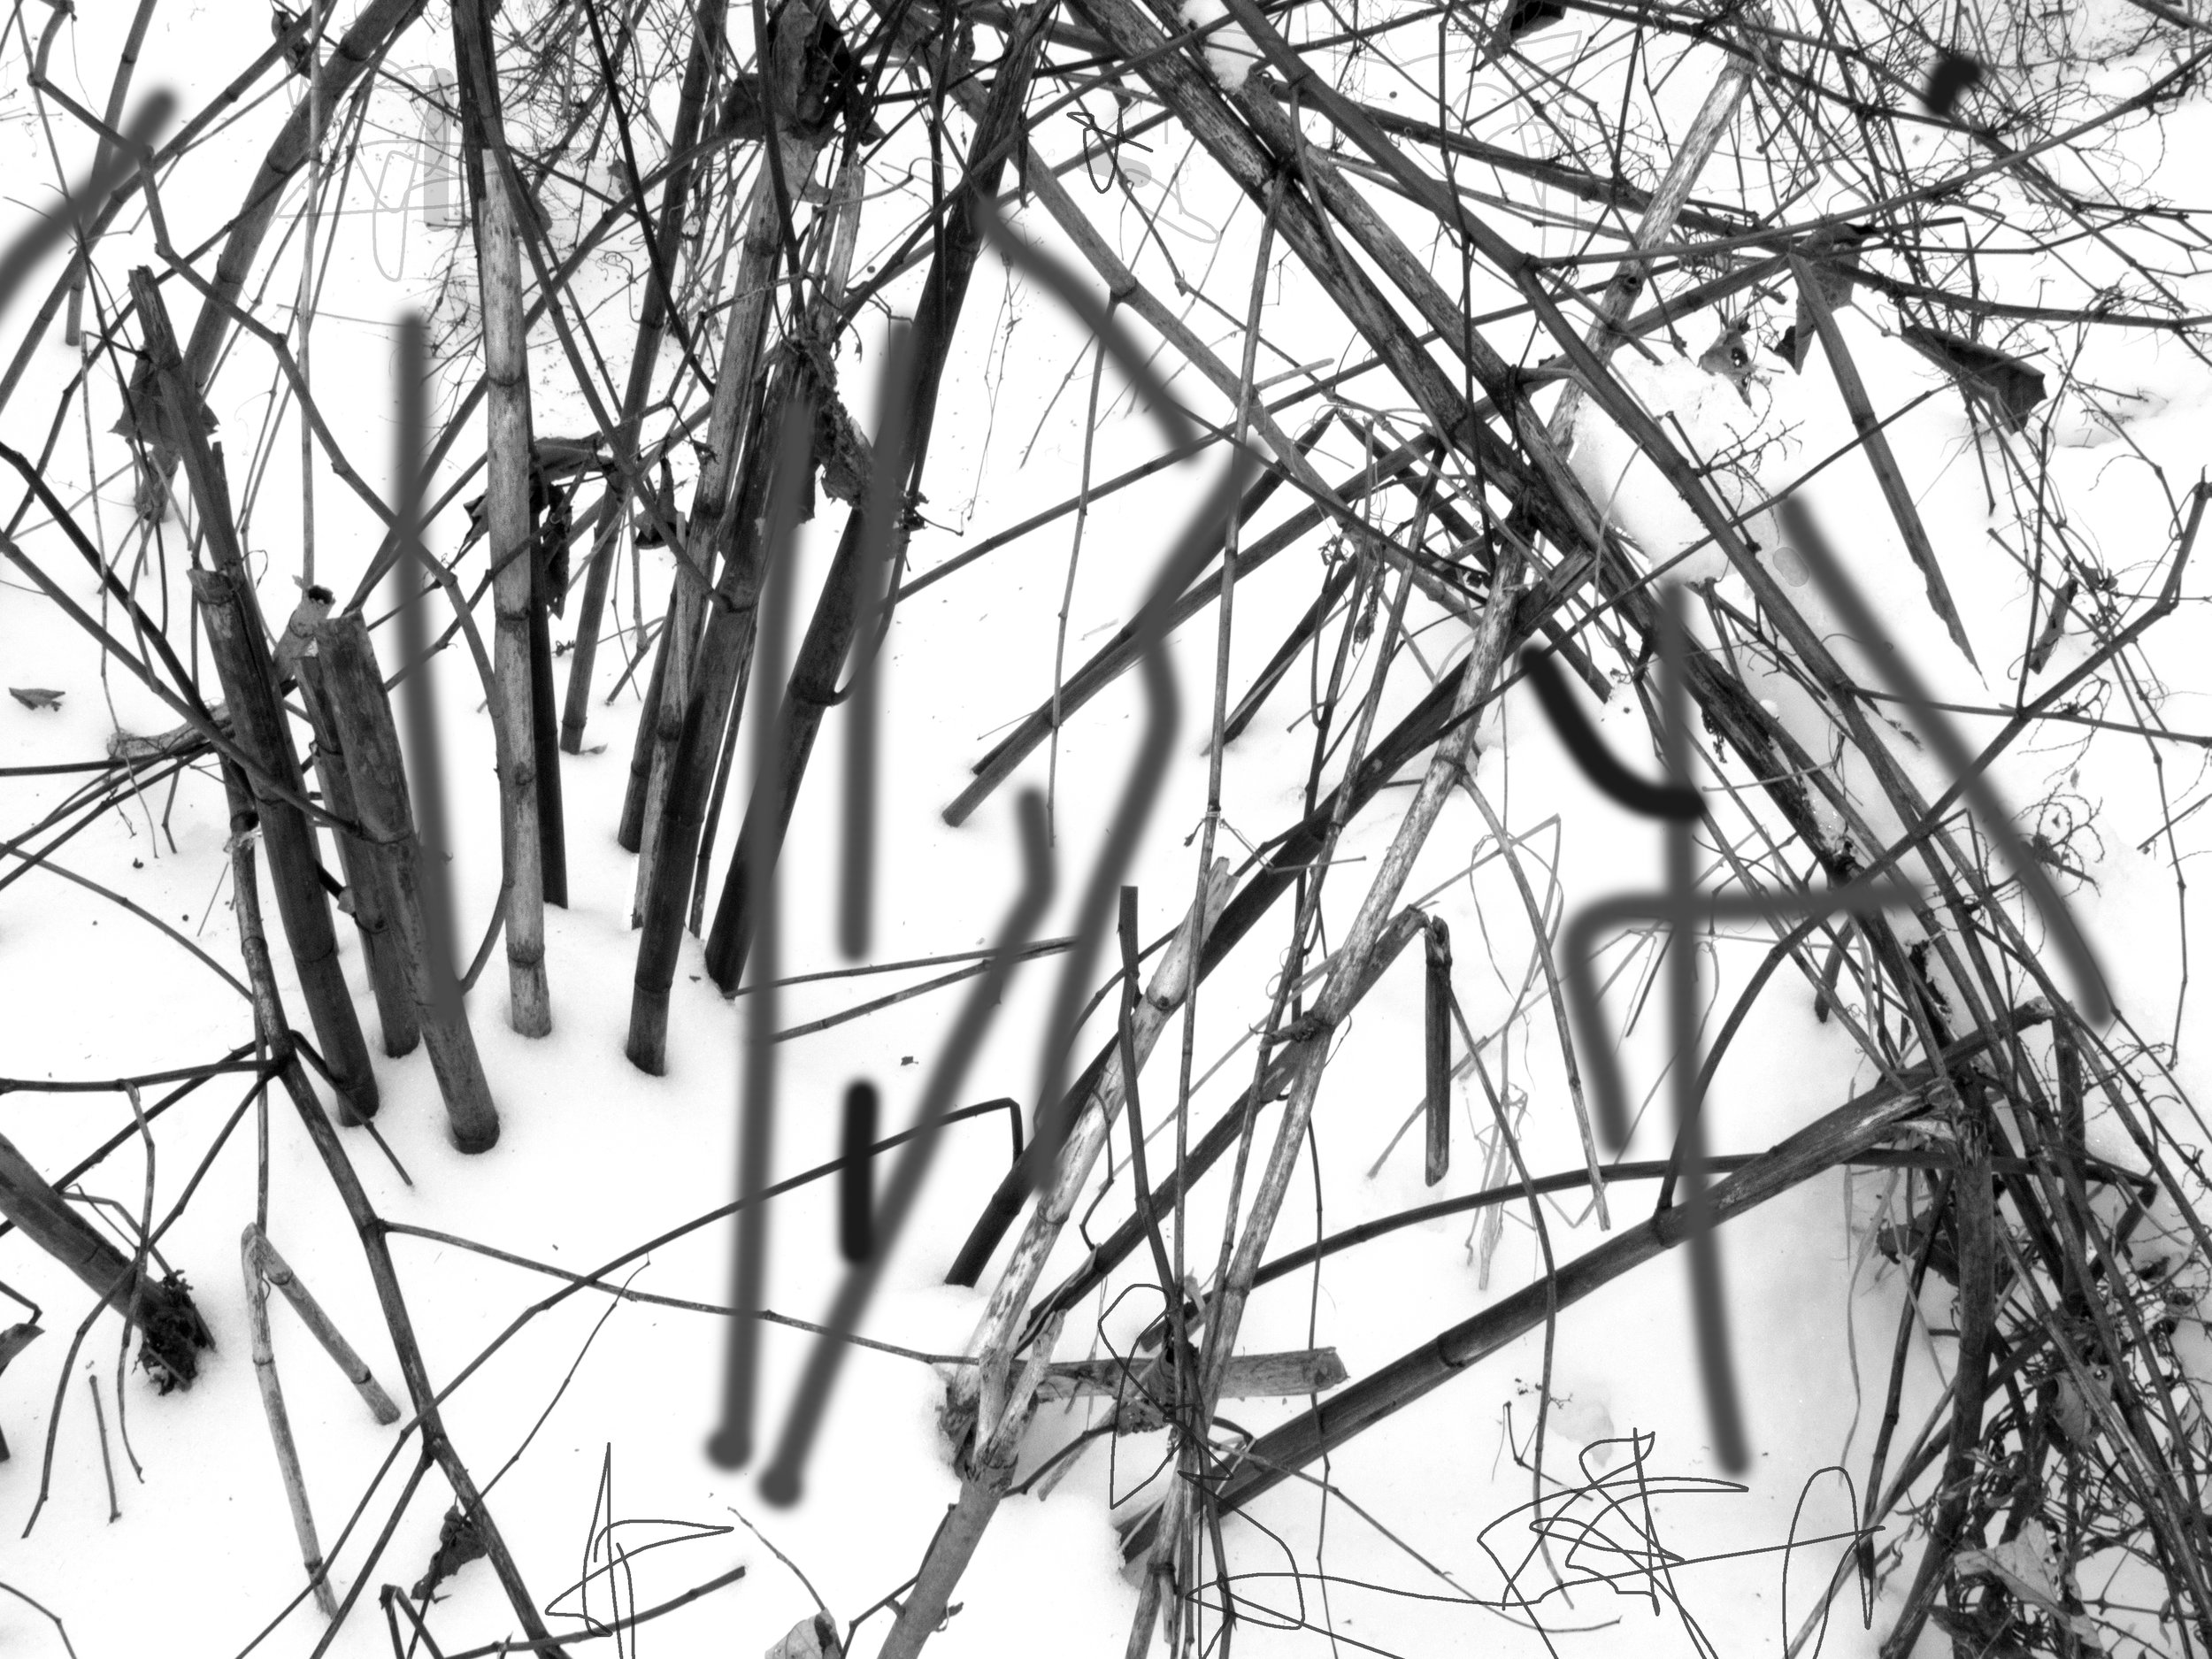 Snow Reeds